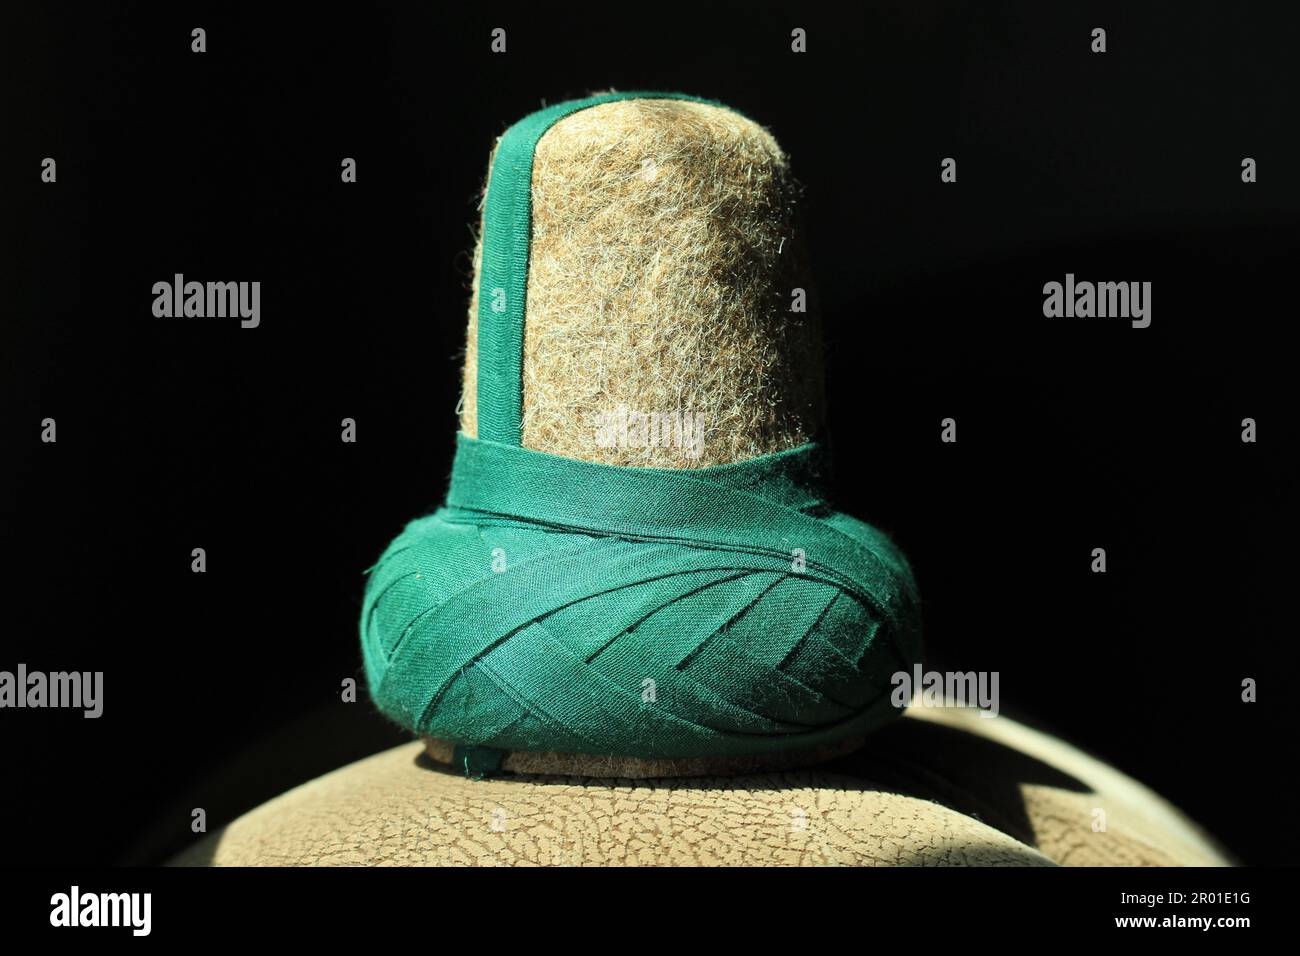 Der Hut, den die Mevlevi-Derwische trugen. Hut aus braunem Filz für Mevlevi-Derwische. Dieser Hut nennt man Sikke. Stockfoto